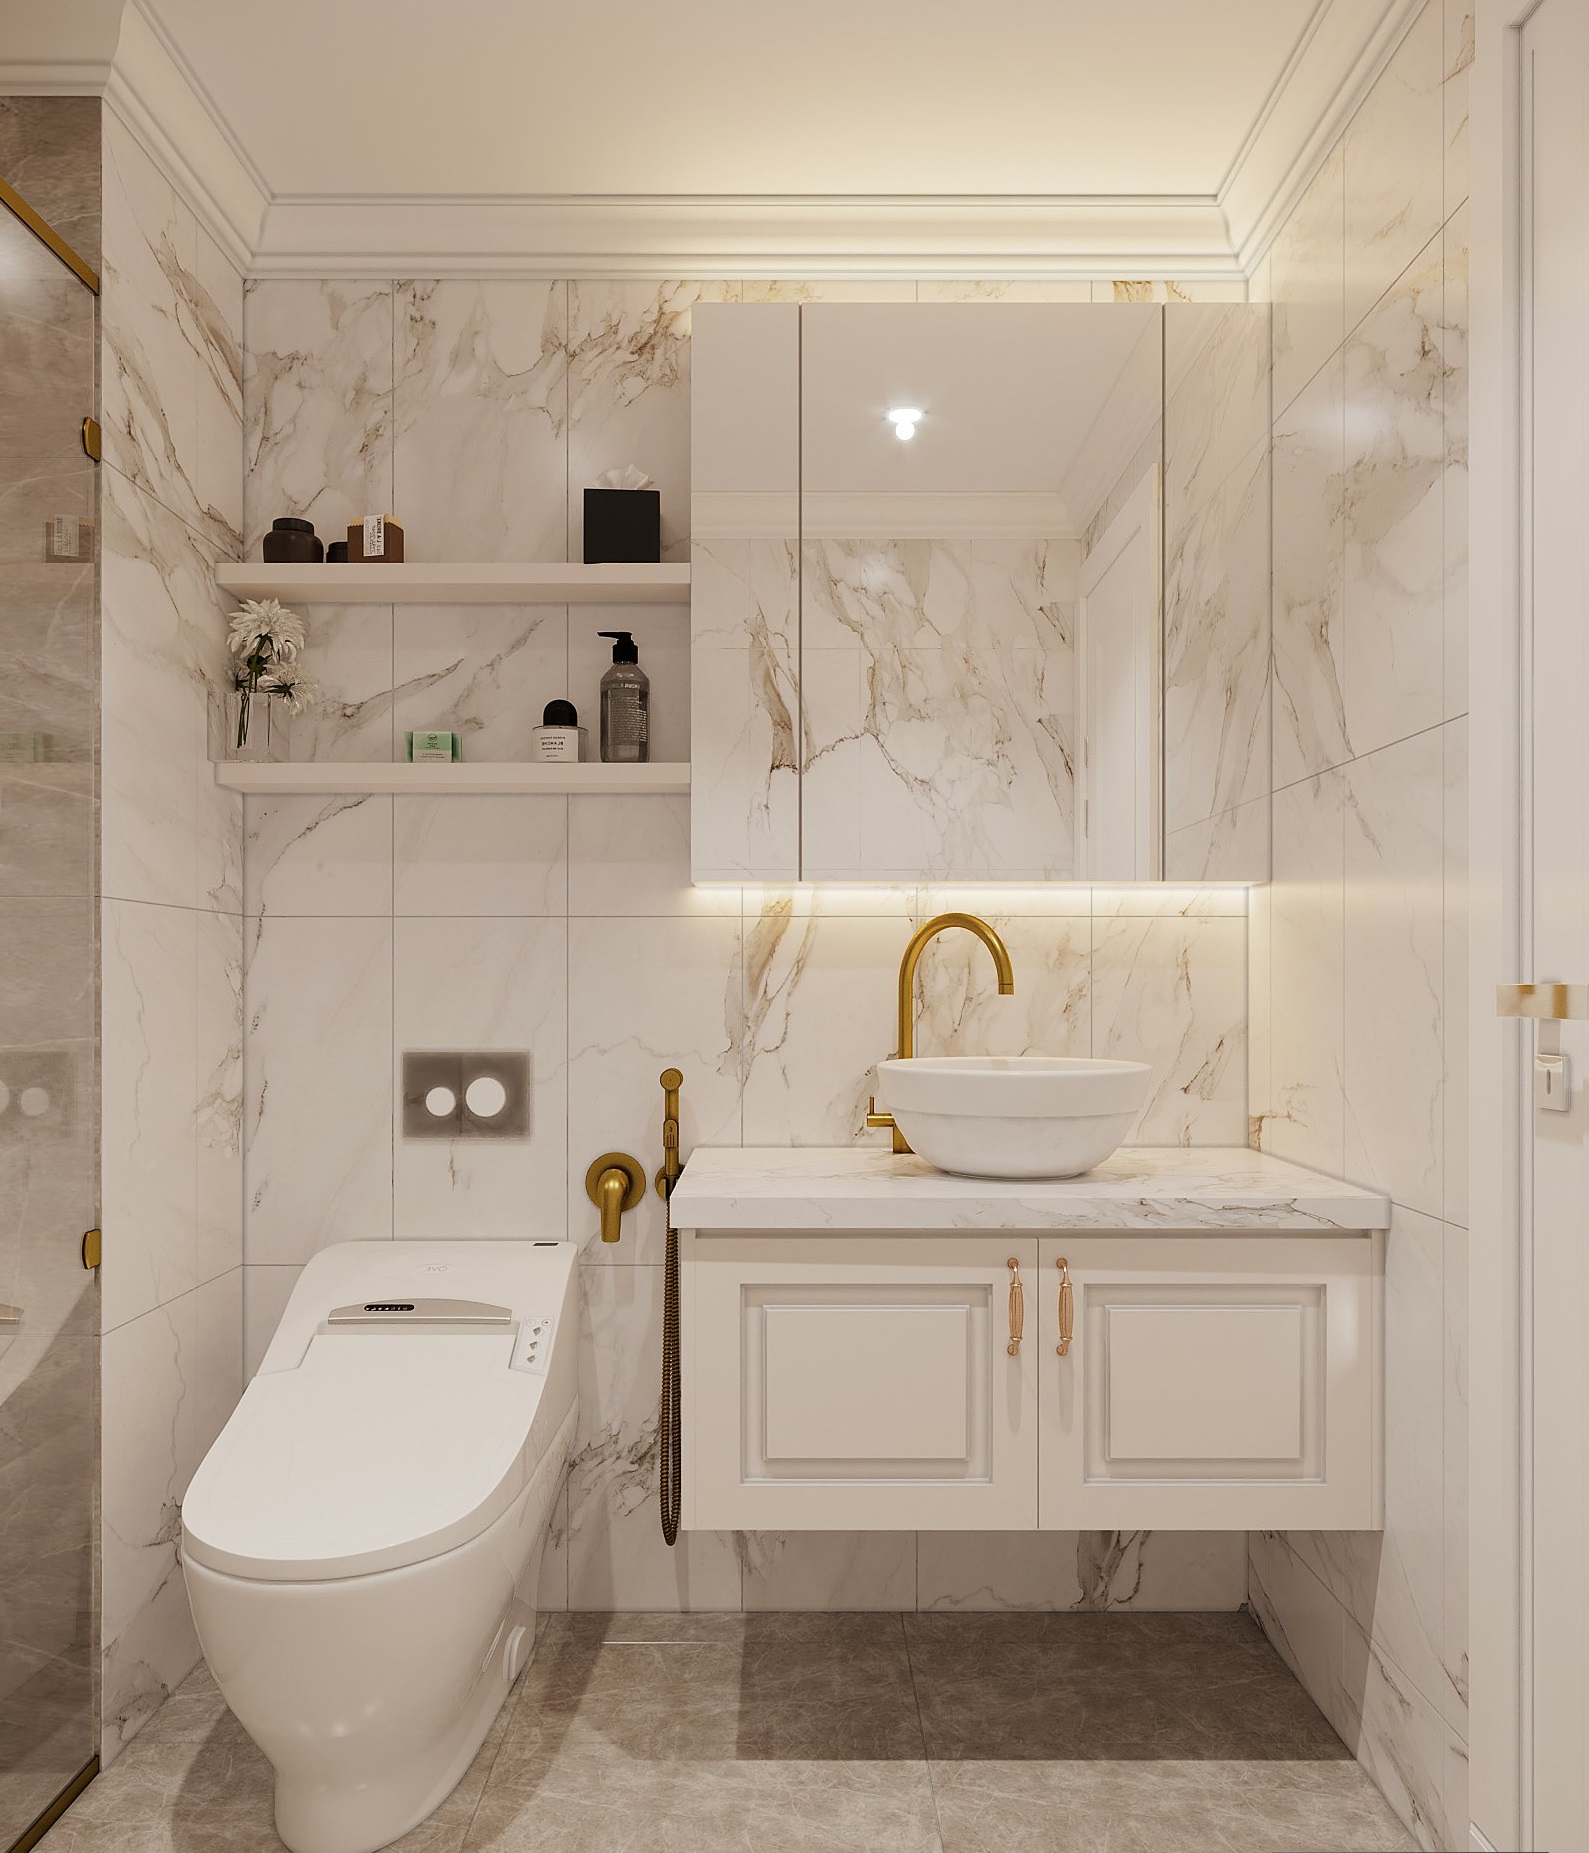 Tủ và giá kệ lưu trữ trong phòng tắm được thiết kế dạng nổi, gắn trực tiếp lên tường tạo độ thoáng sạch cho không gian.